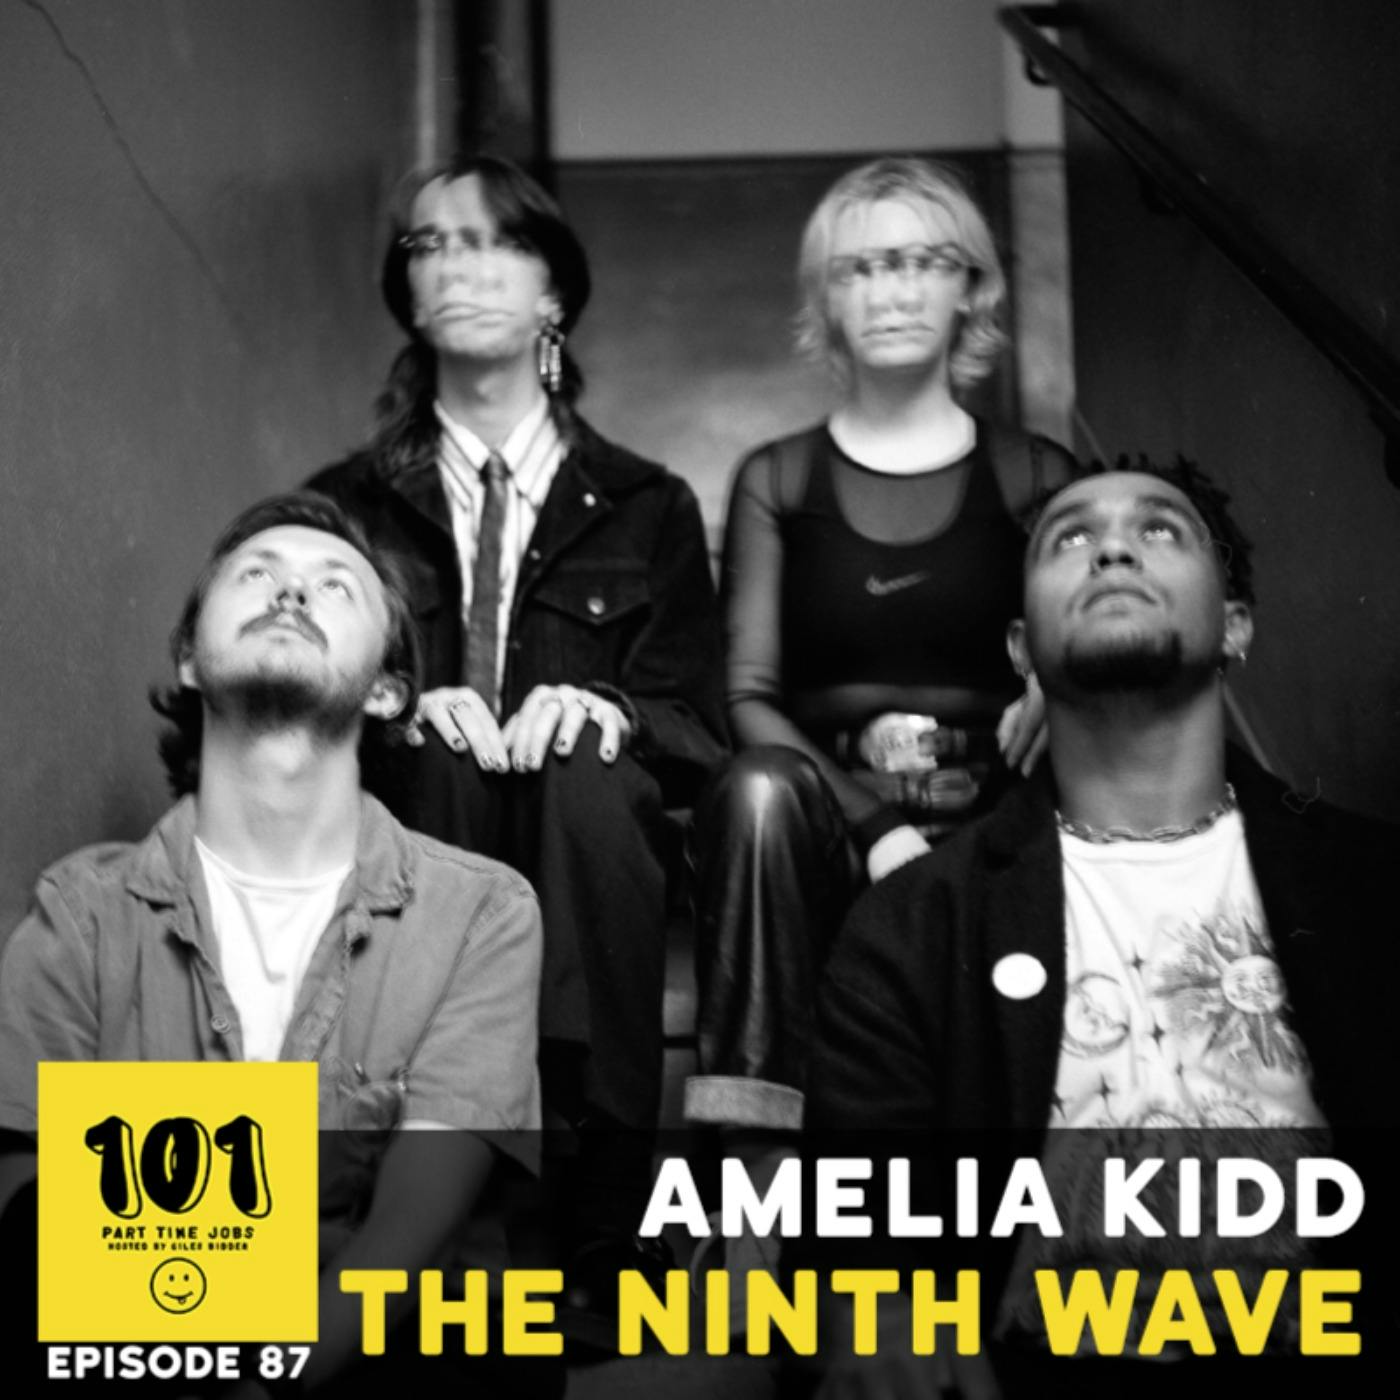 Amelia Kidd (The Ninth Wave)